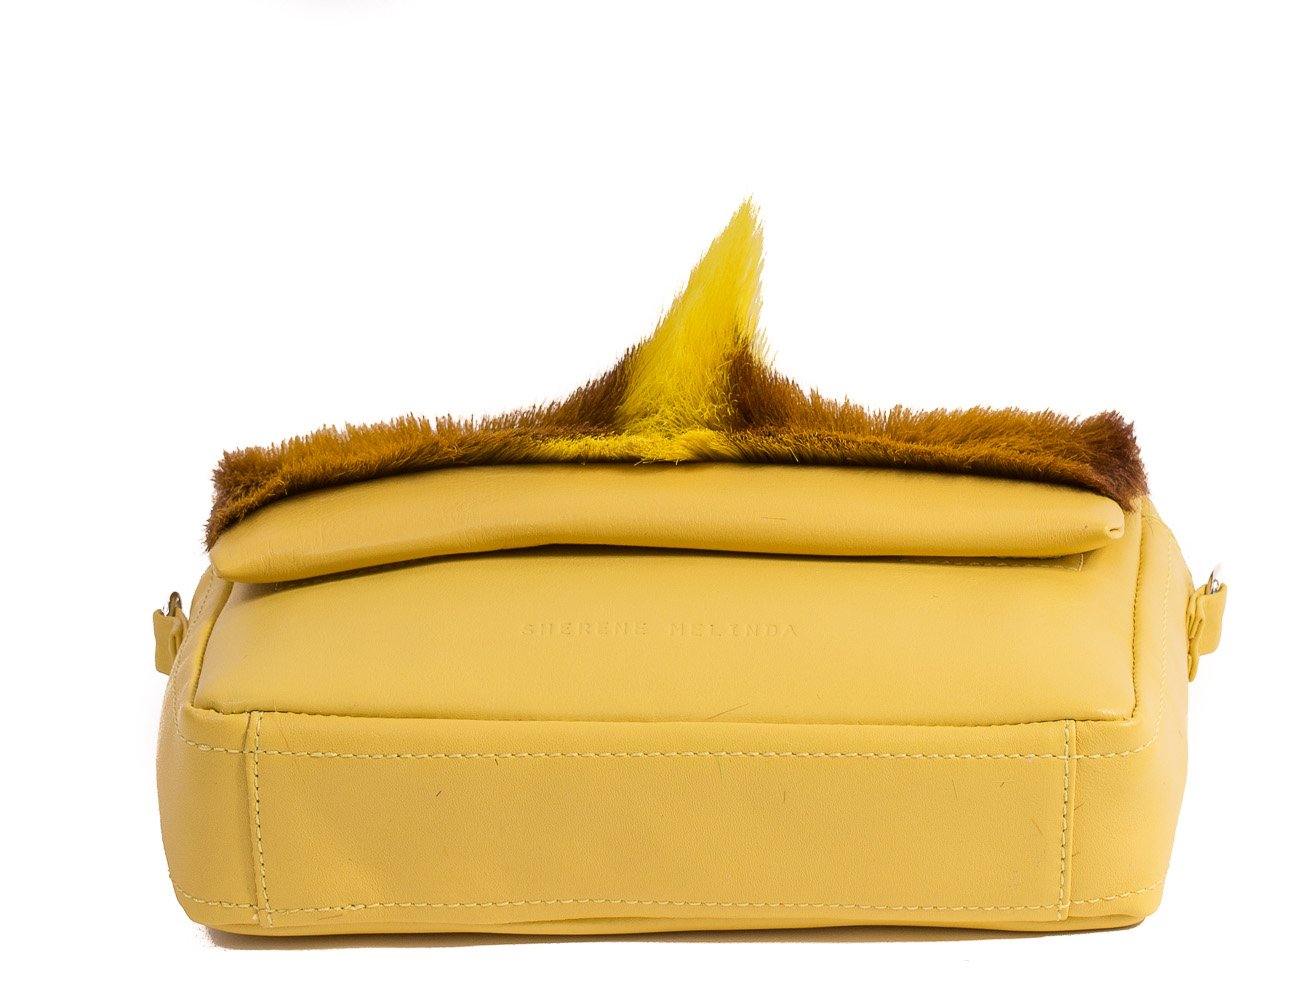 sherene melinda springbok hair-on-hide yellow leather shoulder bag Fan bottom